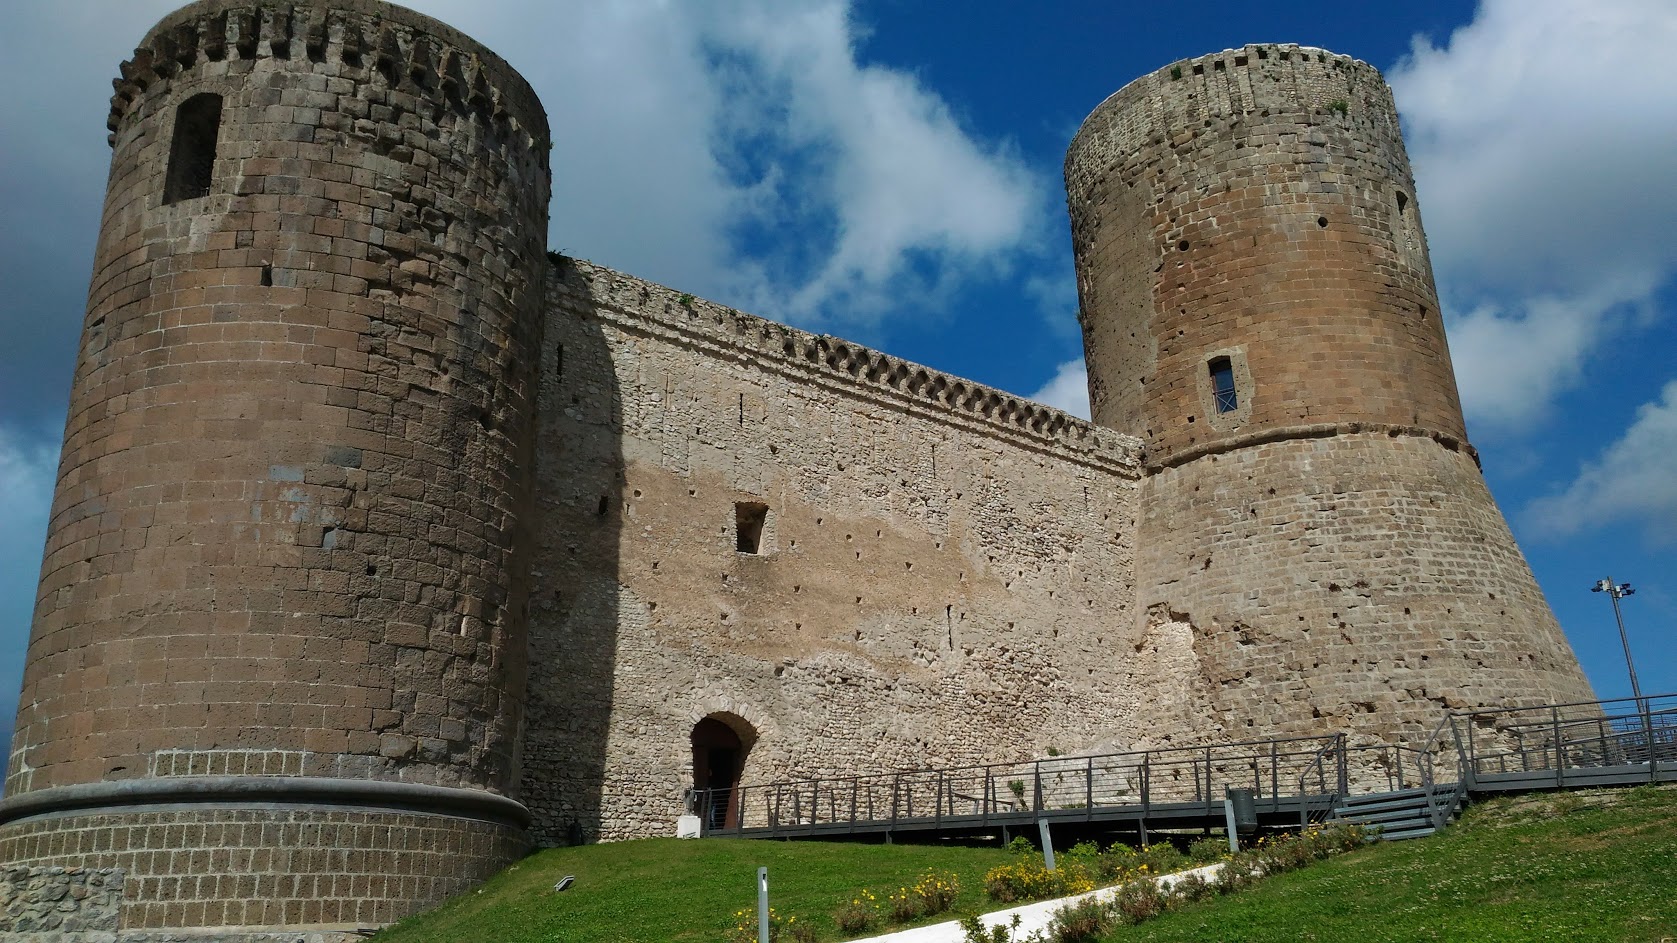 Al castello di Lettere si ritorna indietro di 1000 anni, l’evento imperdibile il prossimo 12 e 13 luglio